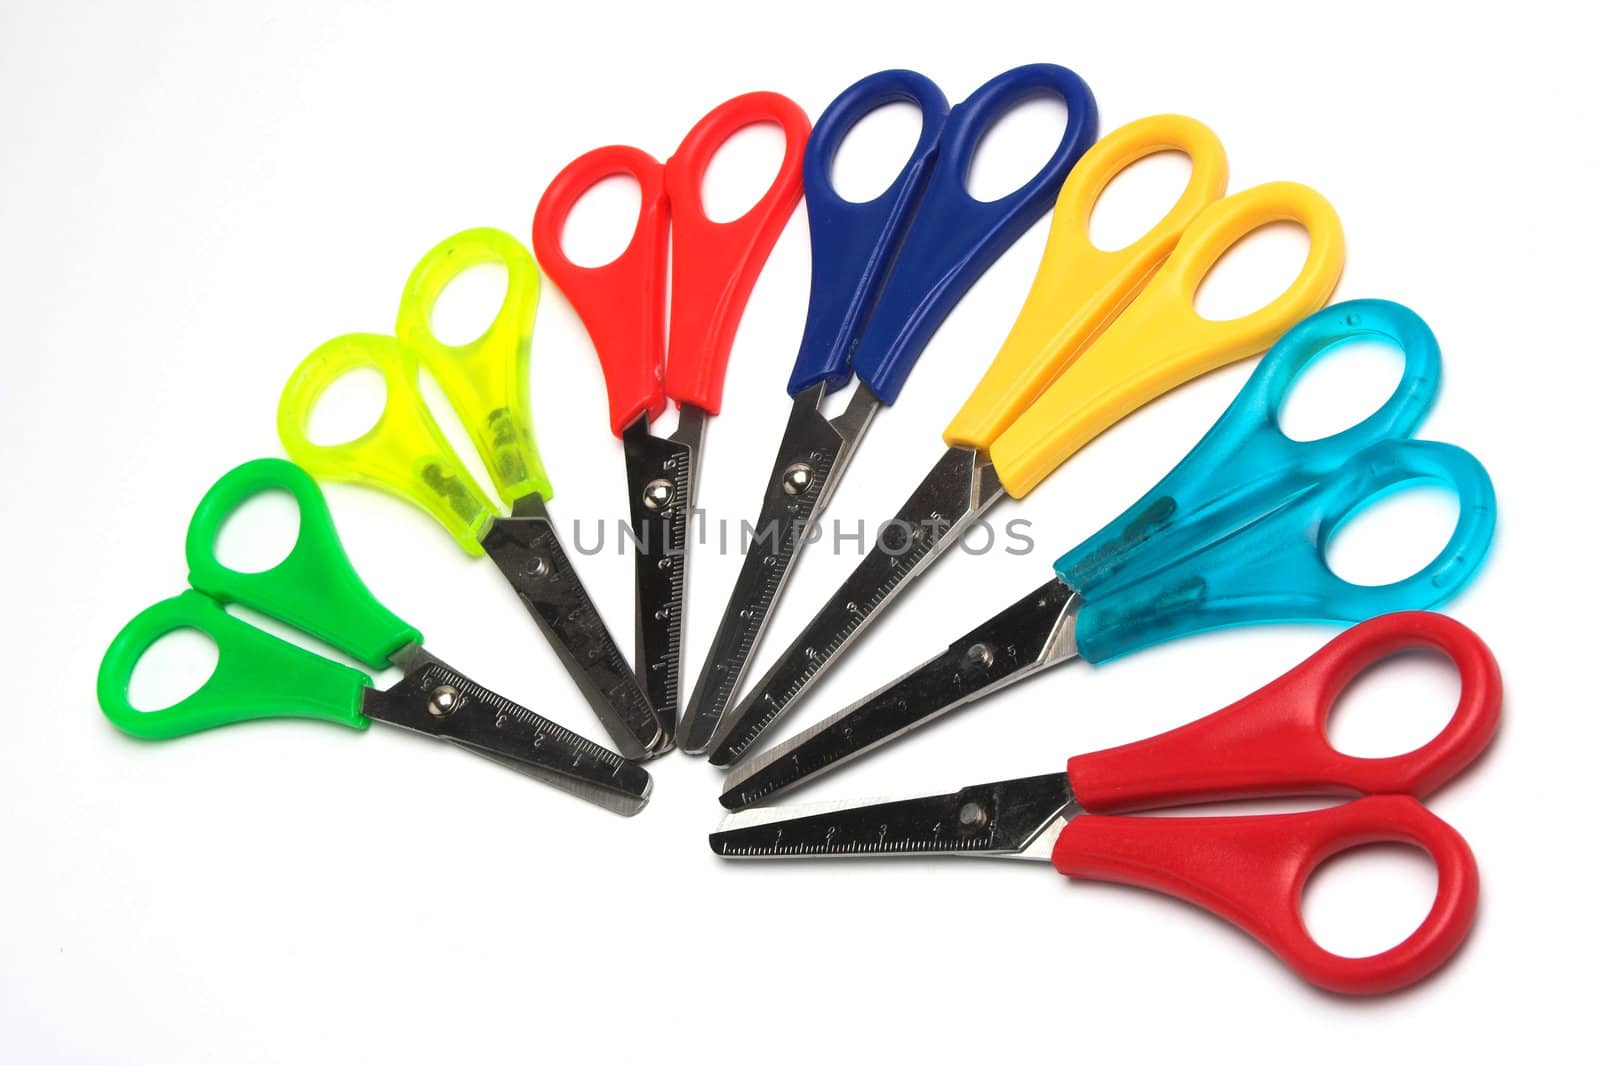 Some colored scissors over white